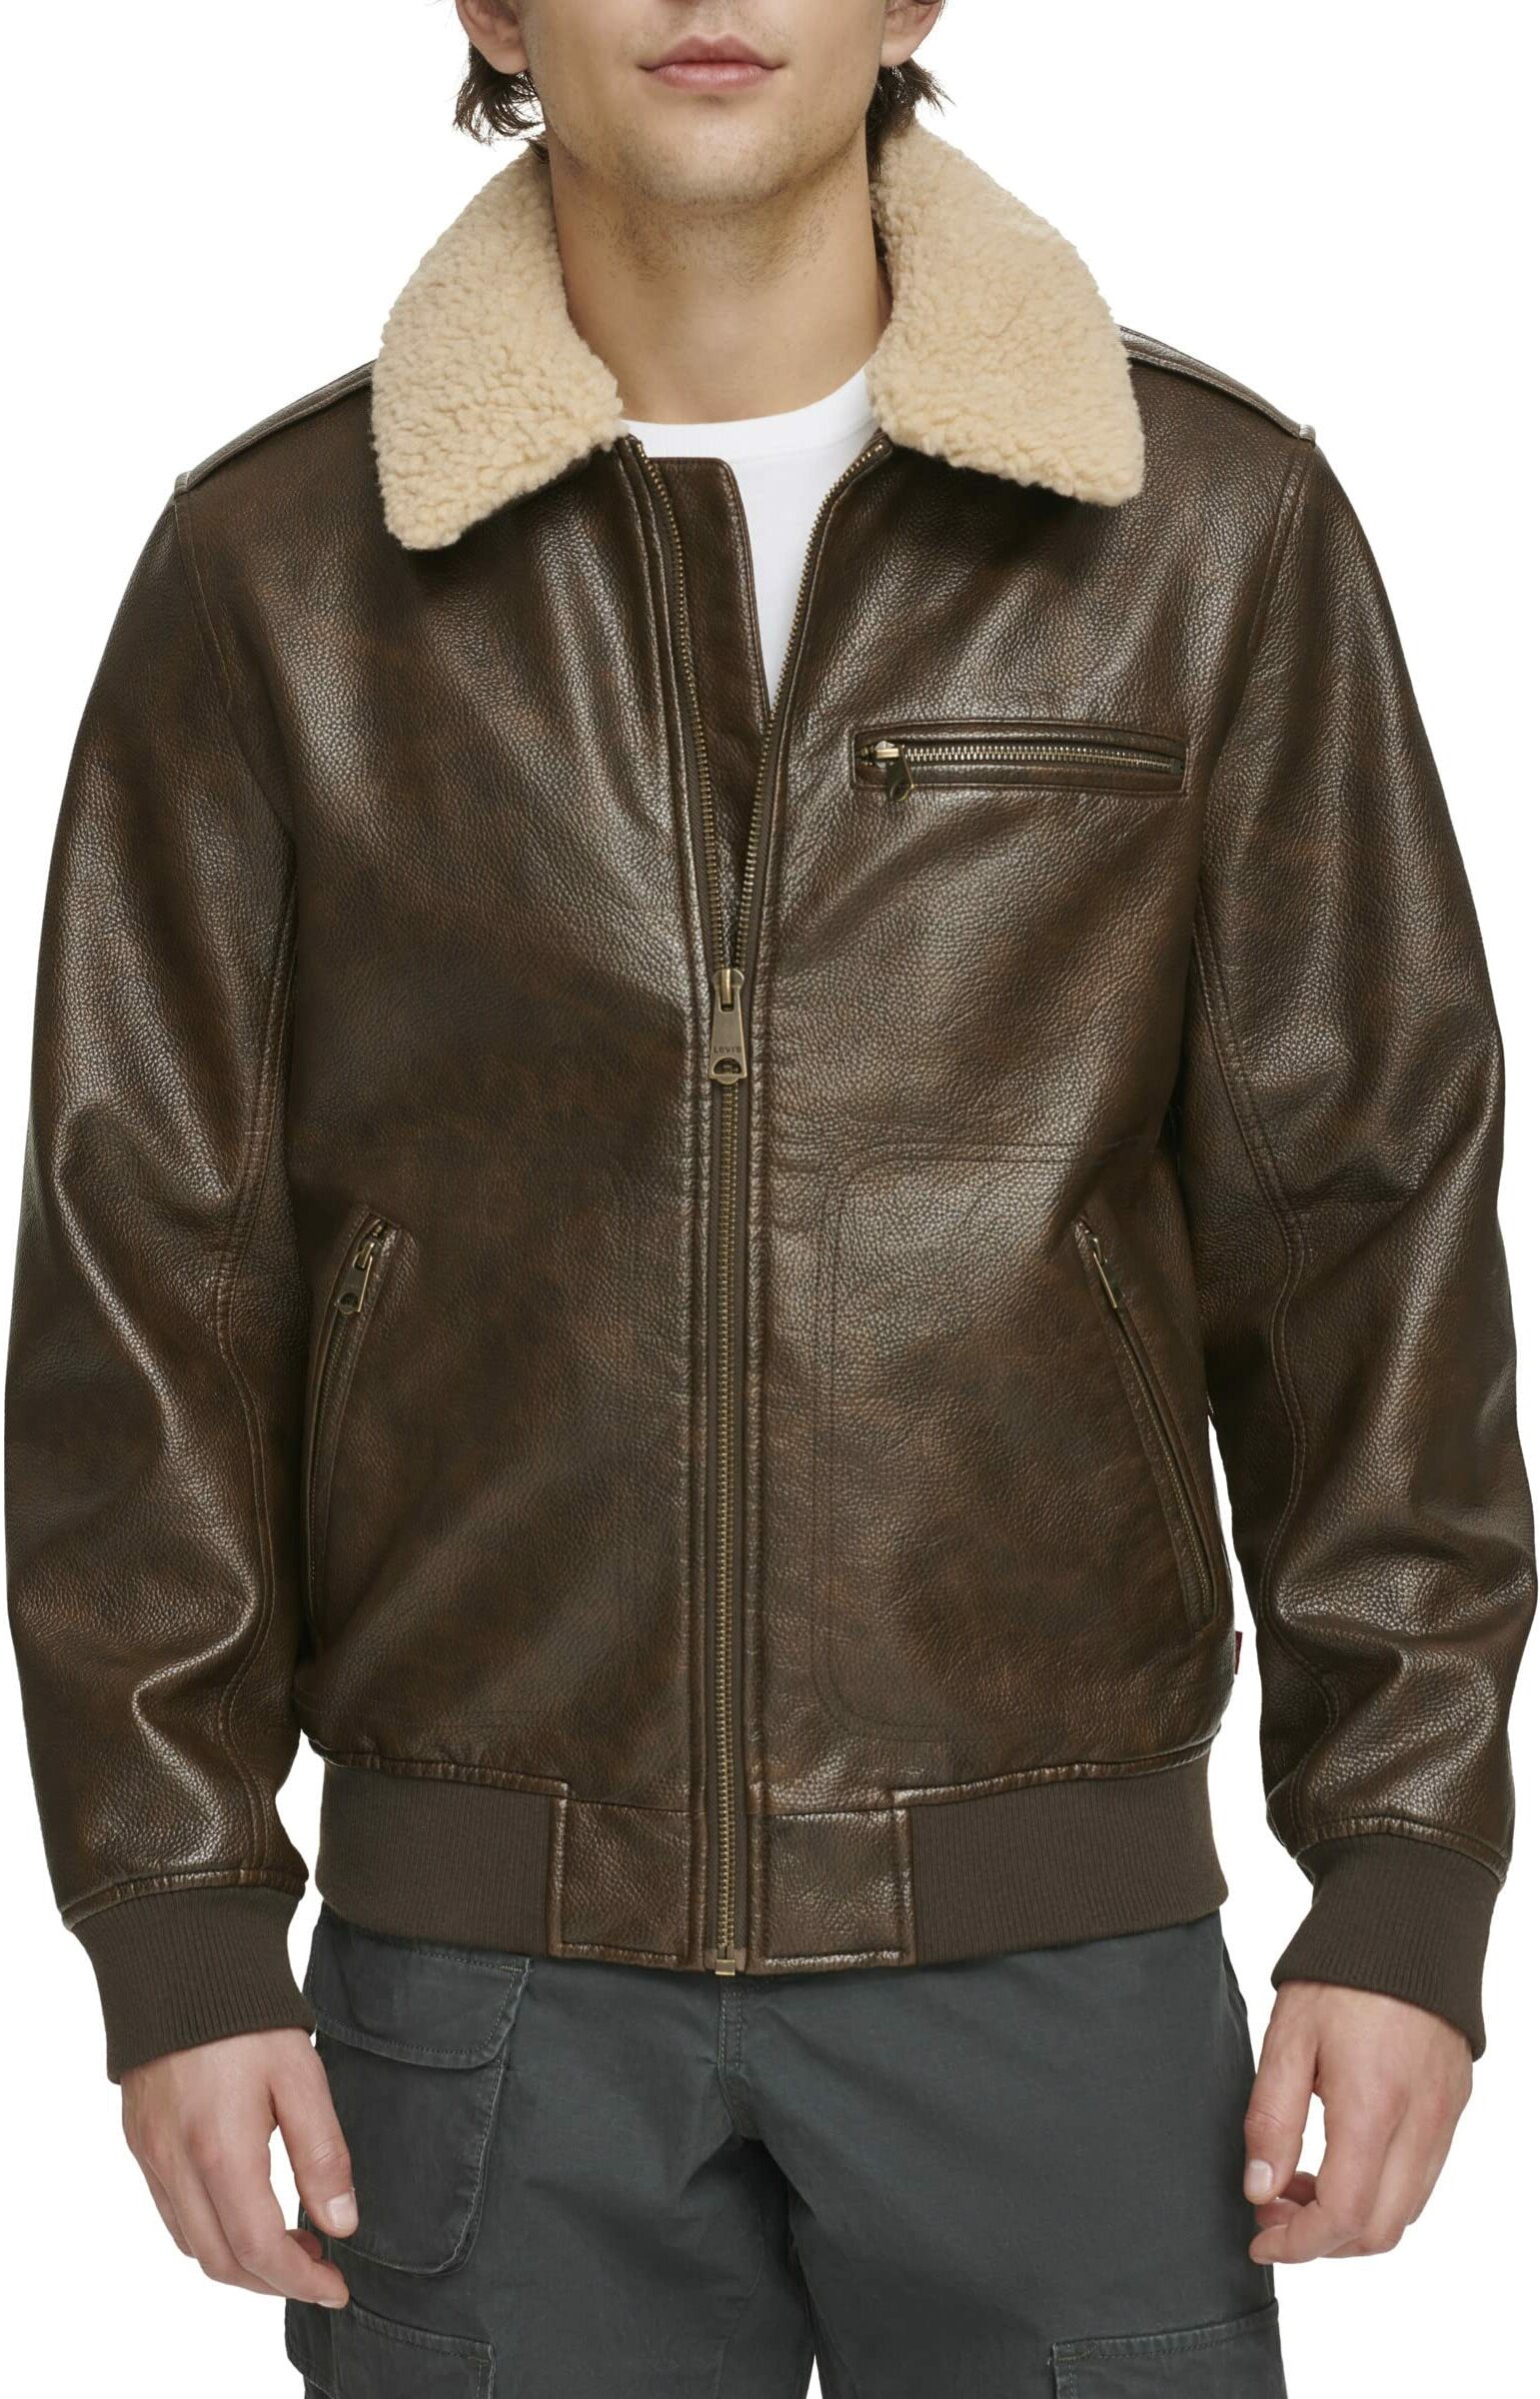 Кожаная куртка мужская Levi's LM3RU804-BRN коричневая L